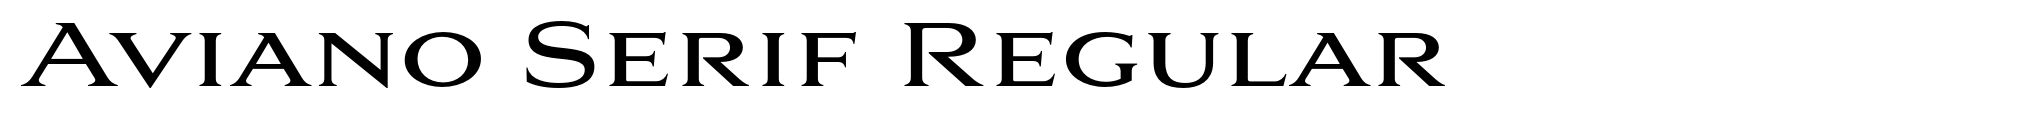 Aviano Serif Regular image